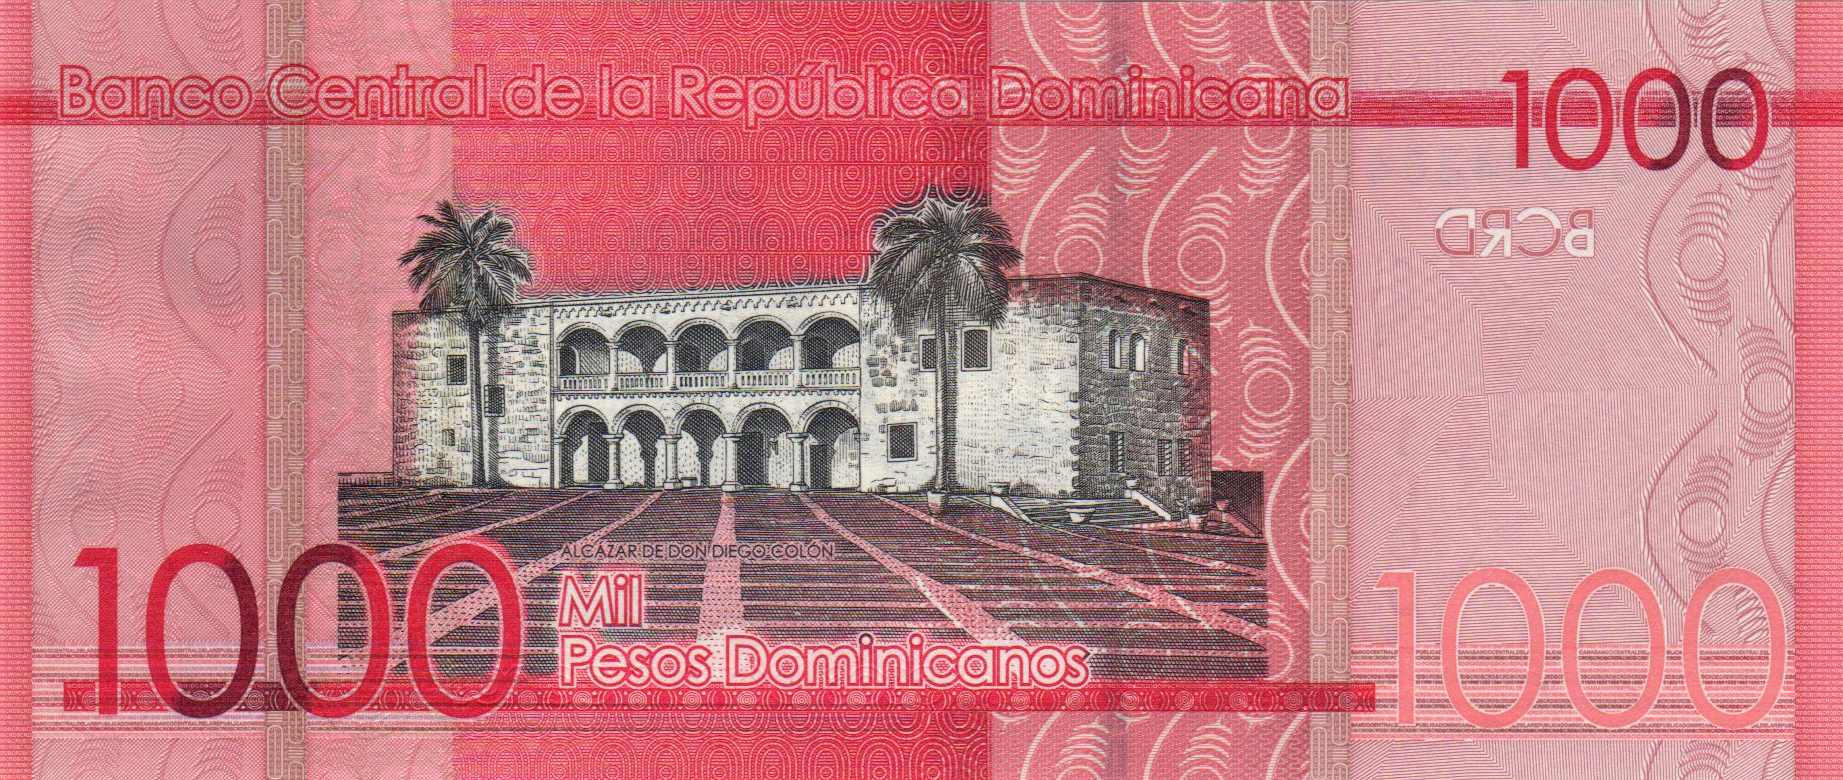 Dominican Republic New 1 000 Peso Dominicano Note B731a Confirmed Banknotenews